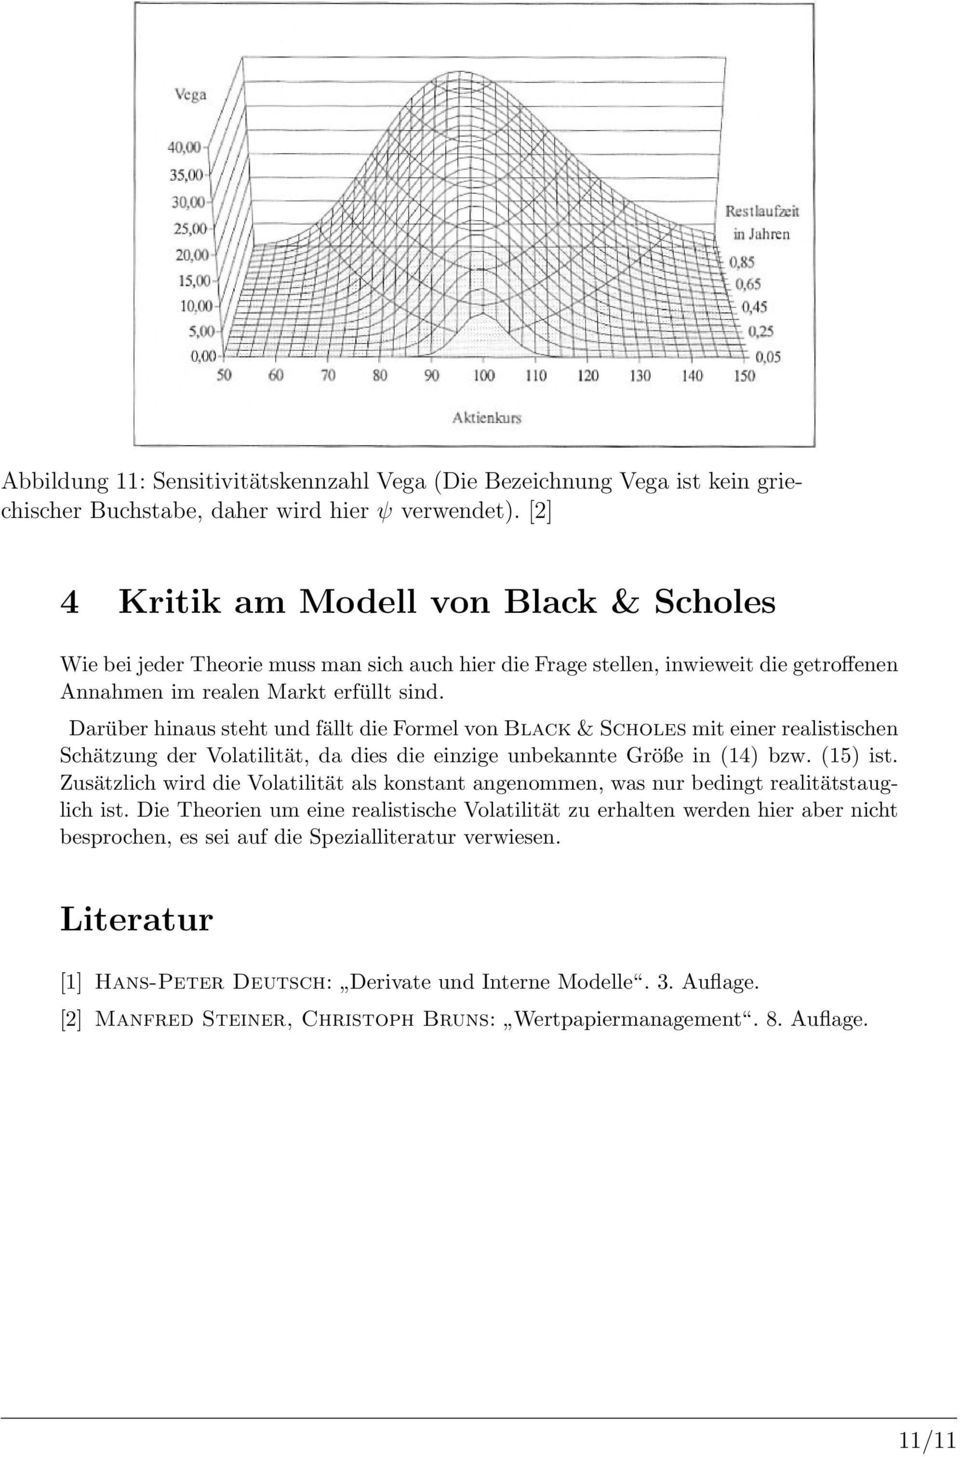 Darüber hinaus steht und fällt die Formel von Black & Scholes mit einer realistischen Schätzung der Volatilität, da dies die einzige unbekannte Größe in (14) bzw. (15) ist.